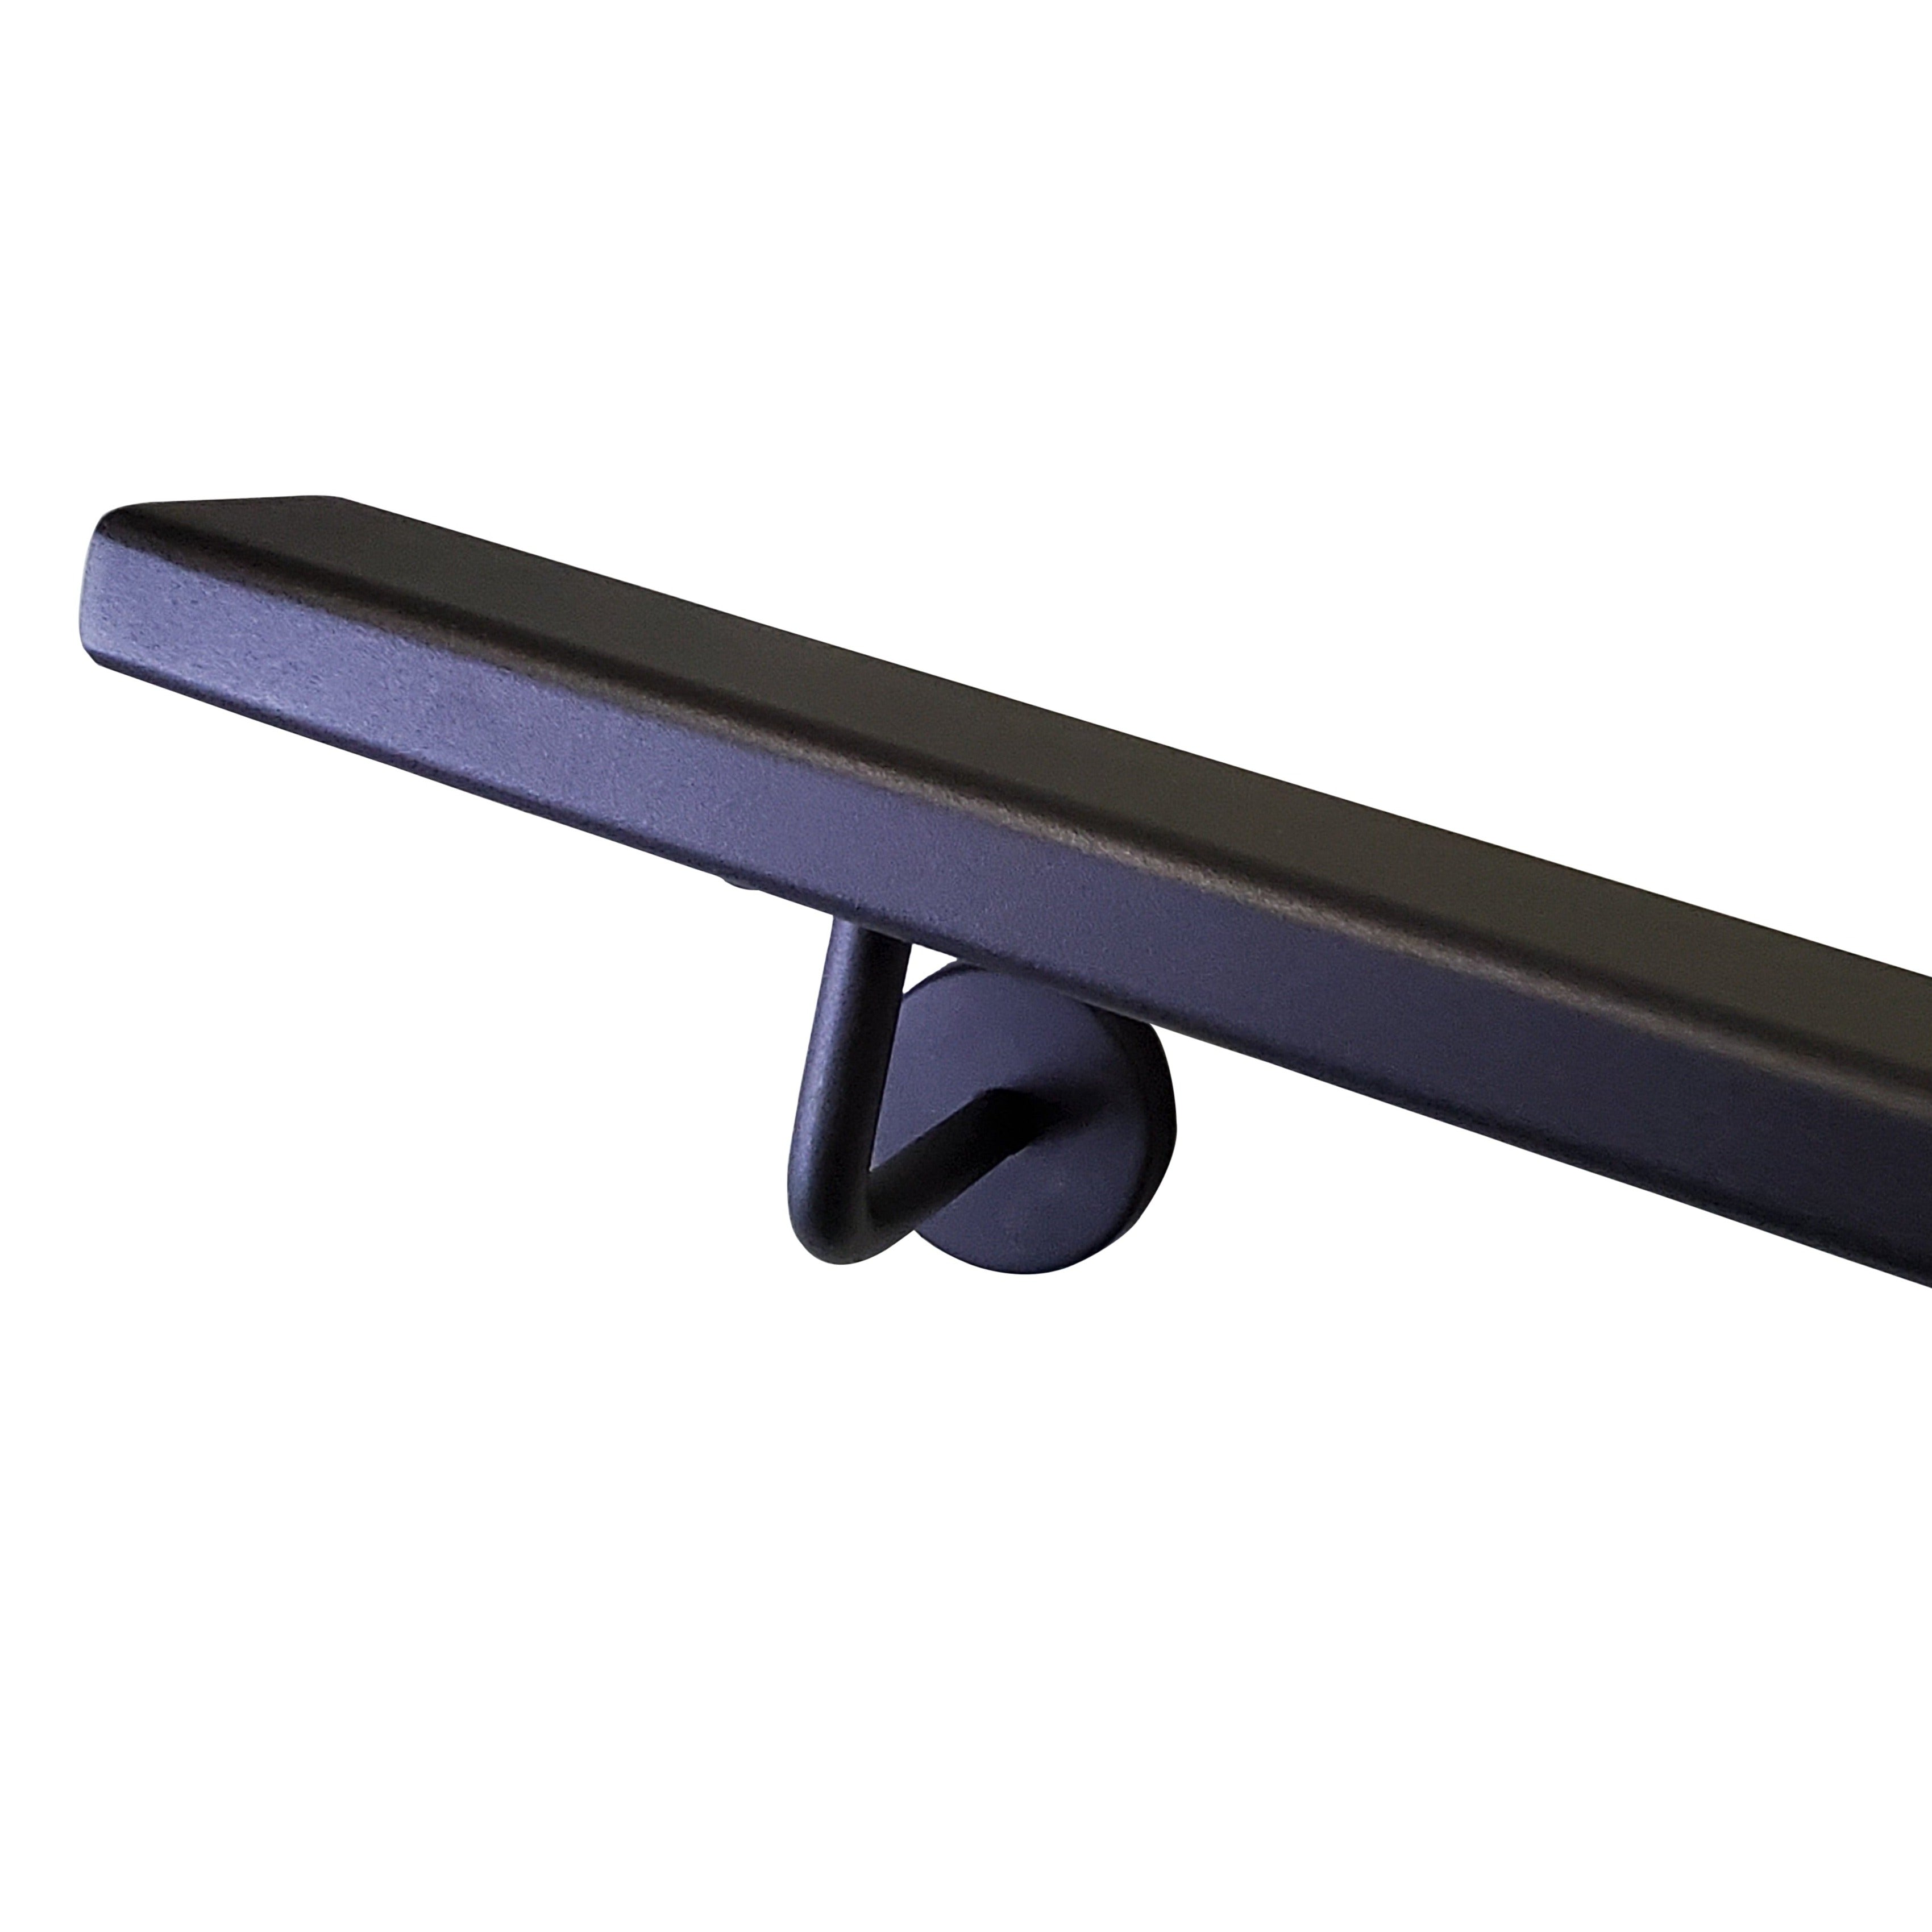 Aluminum handrail – 2" X 1" – Matte Black - Gauthier De LaPlante